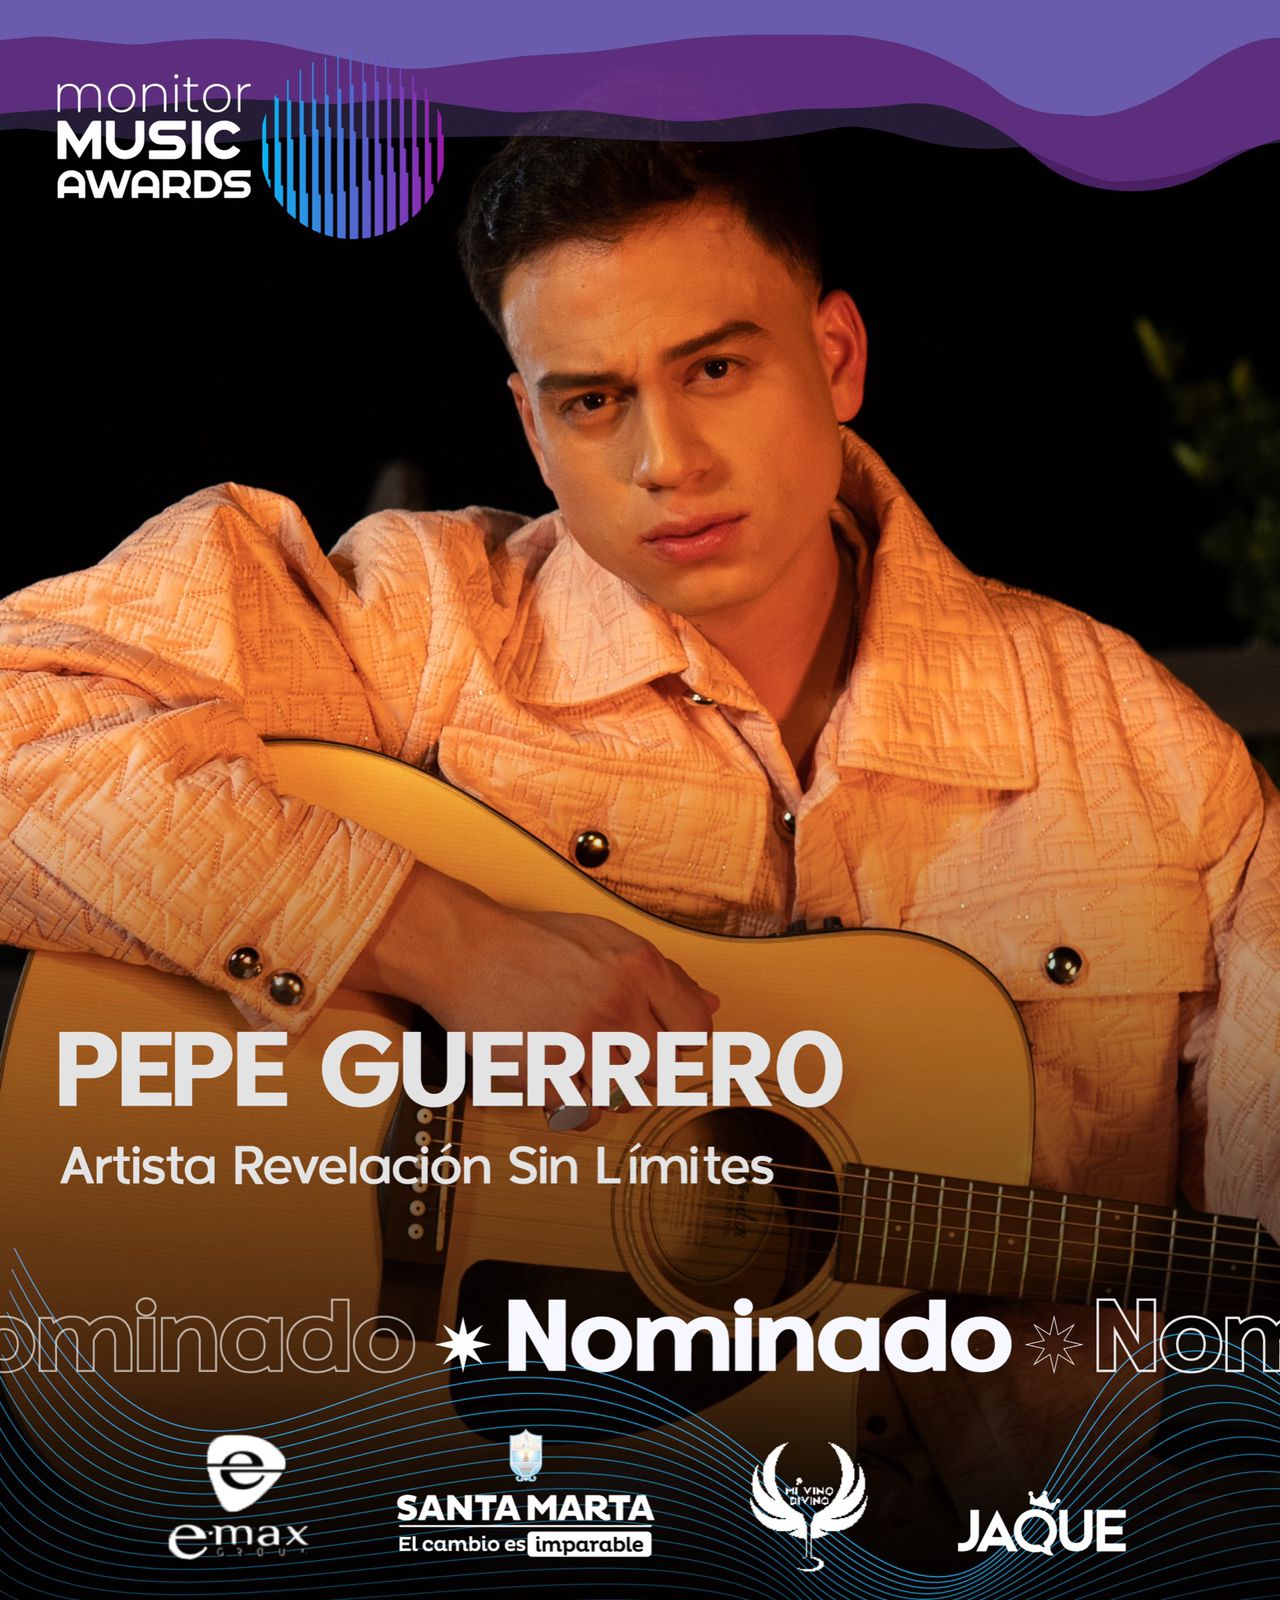 Pepe Guerrero nominado a los Premios Monitor Music Awards como ‘Artista Revelación Sin Límites’